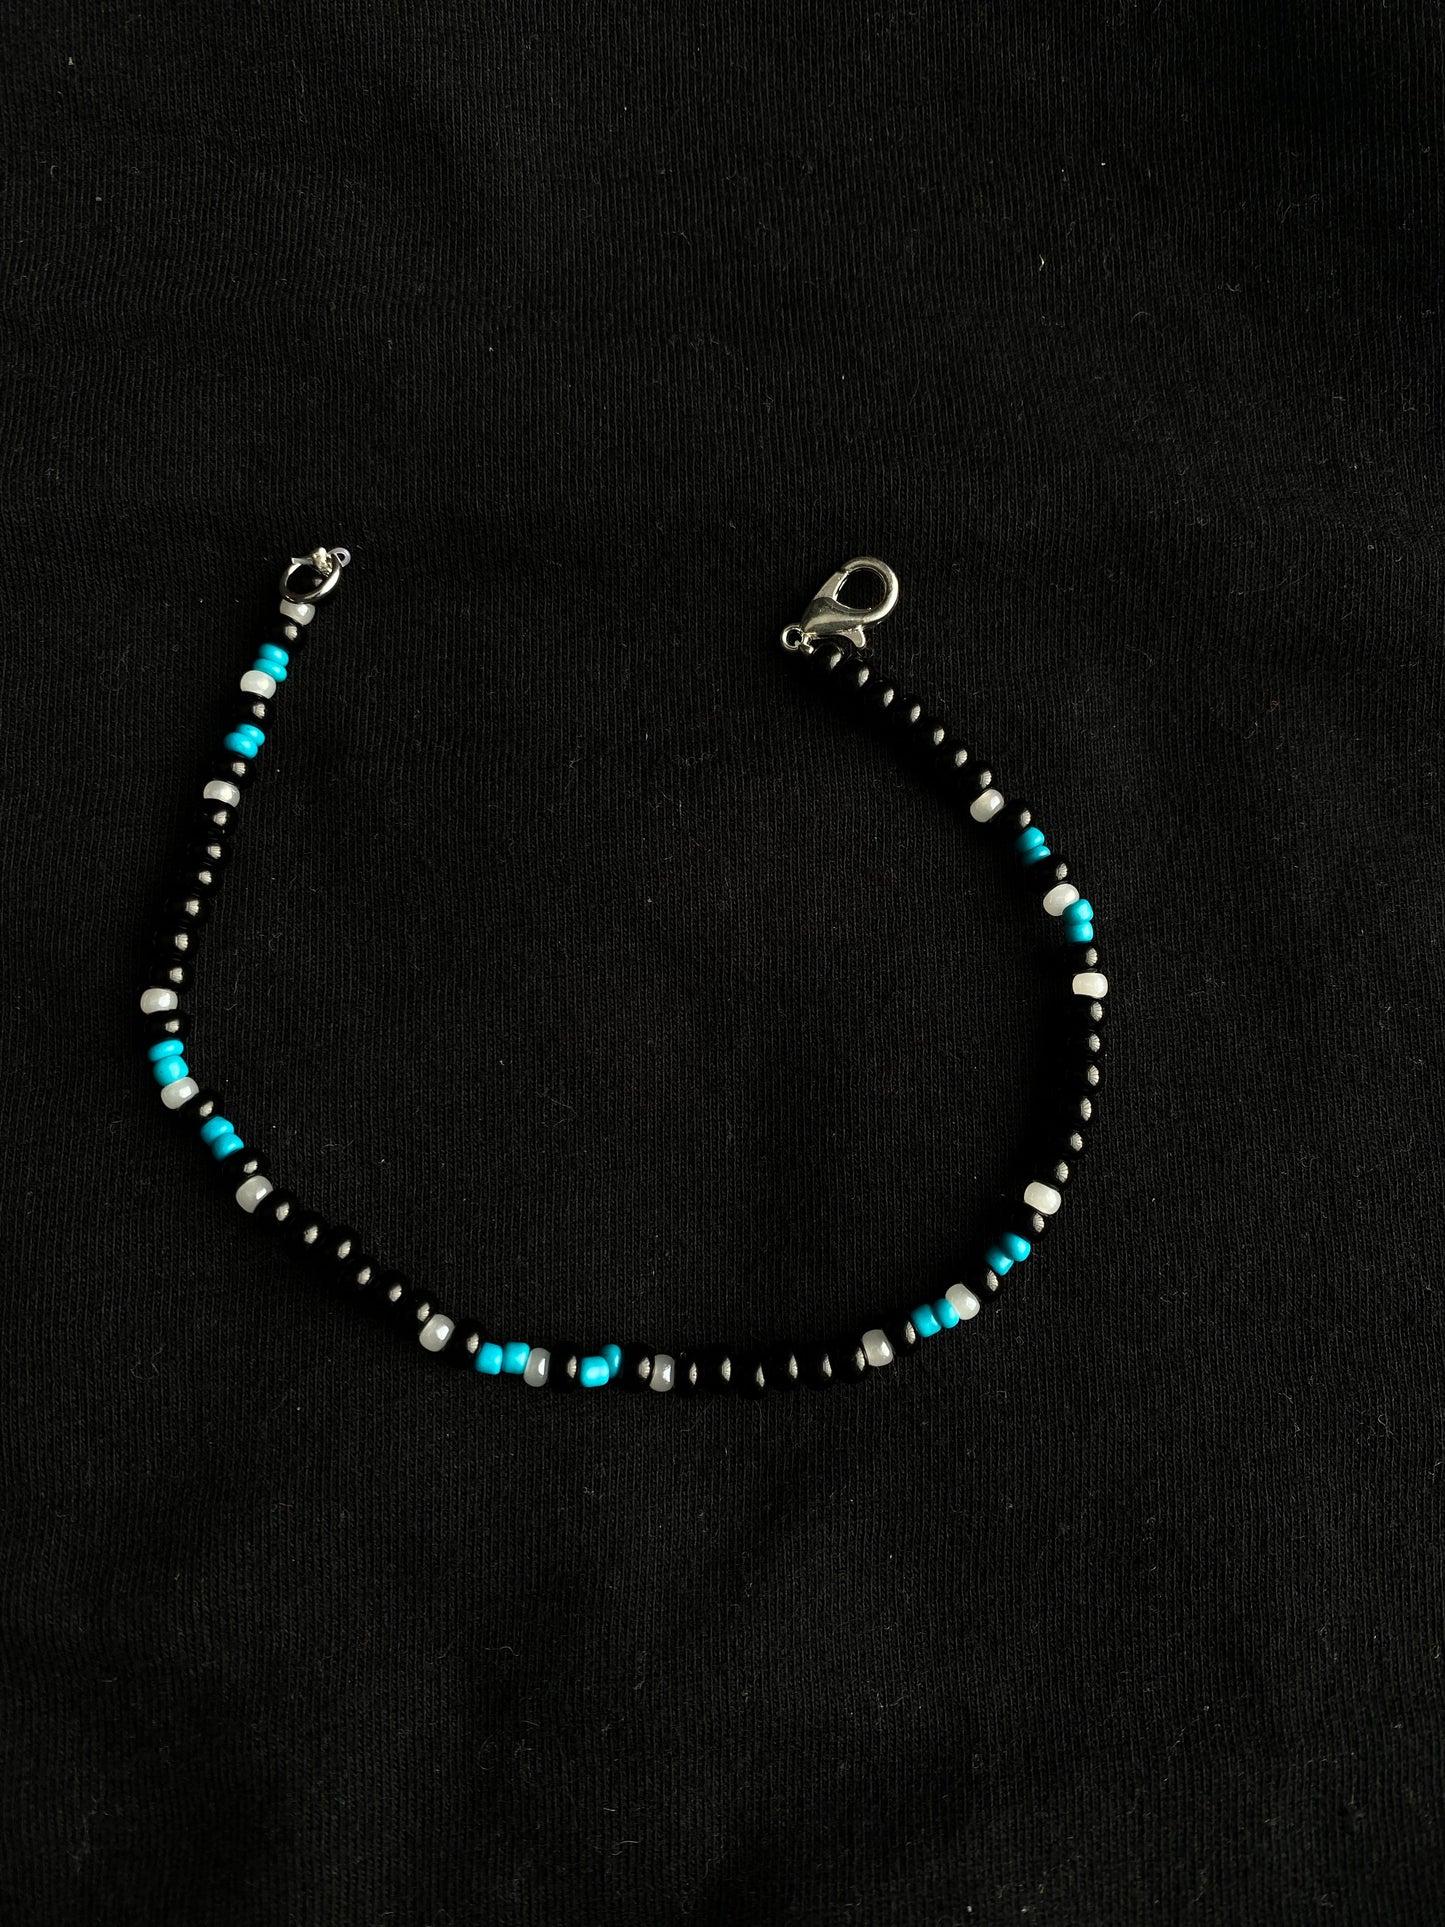 Black and blue bracelet